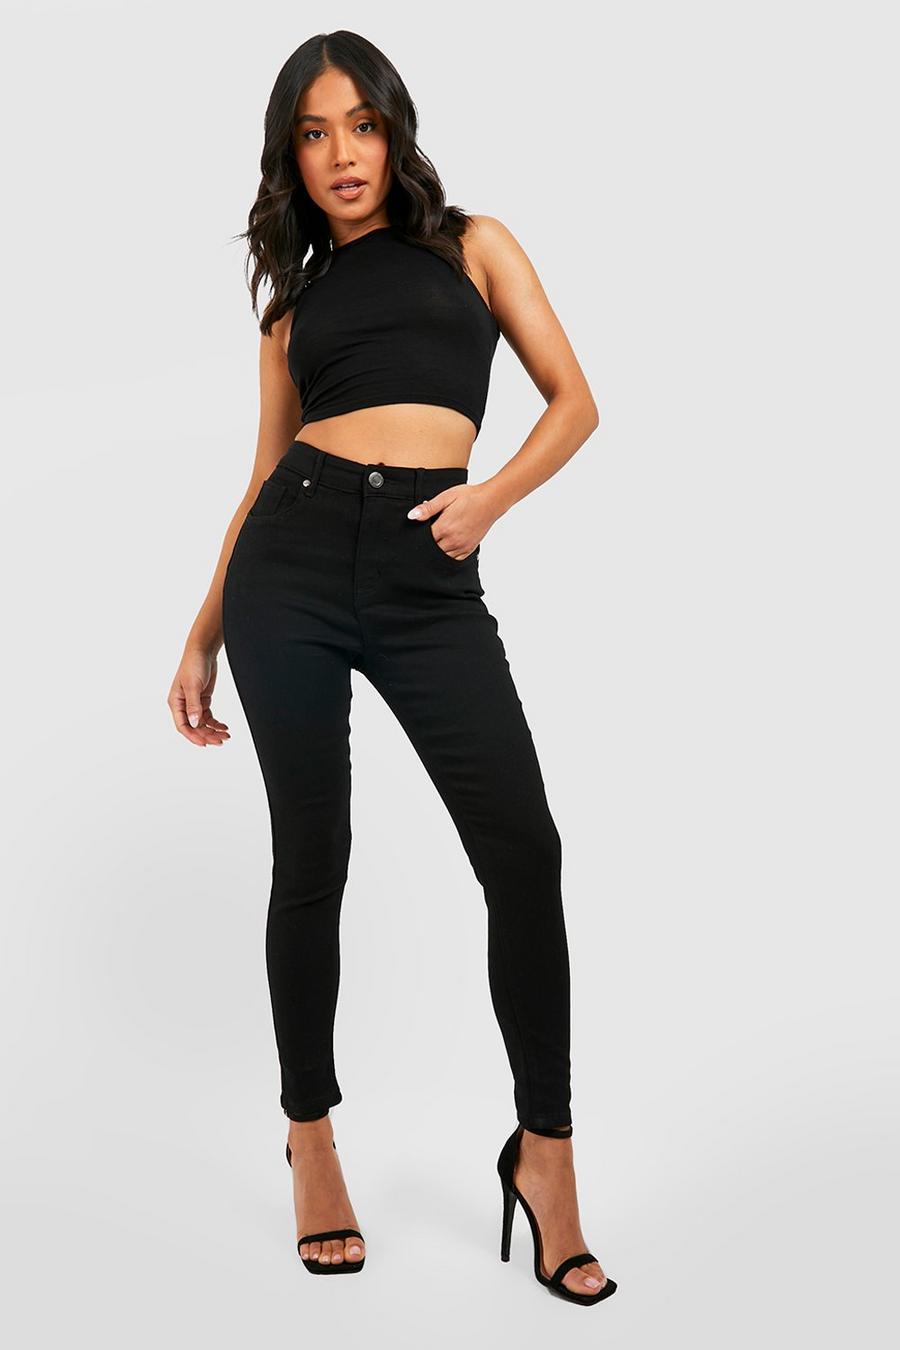 שחור negro סקיני ג'ינס high waist מבד ממוחזר, פטיט